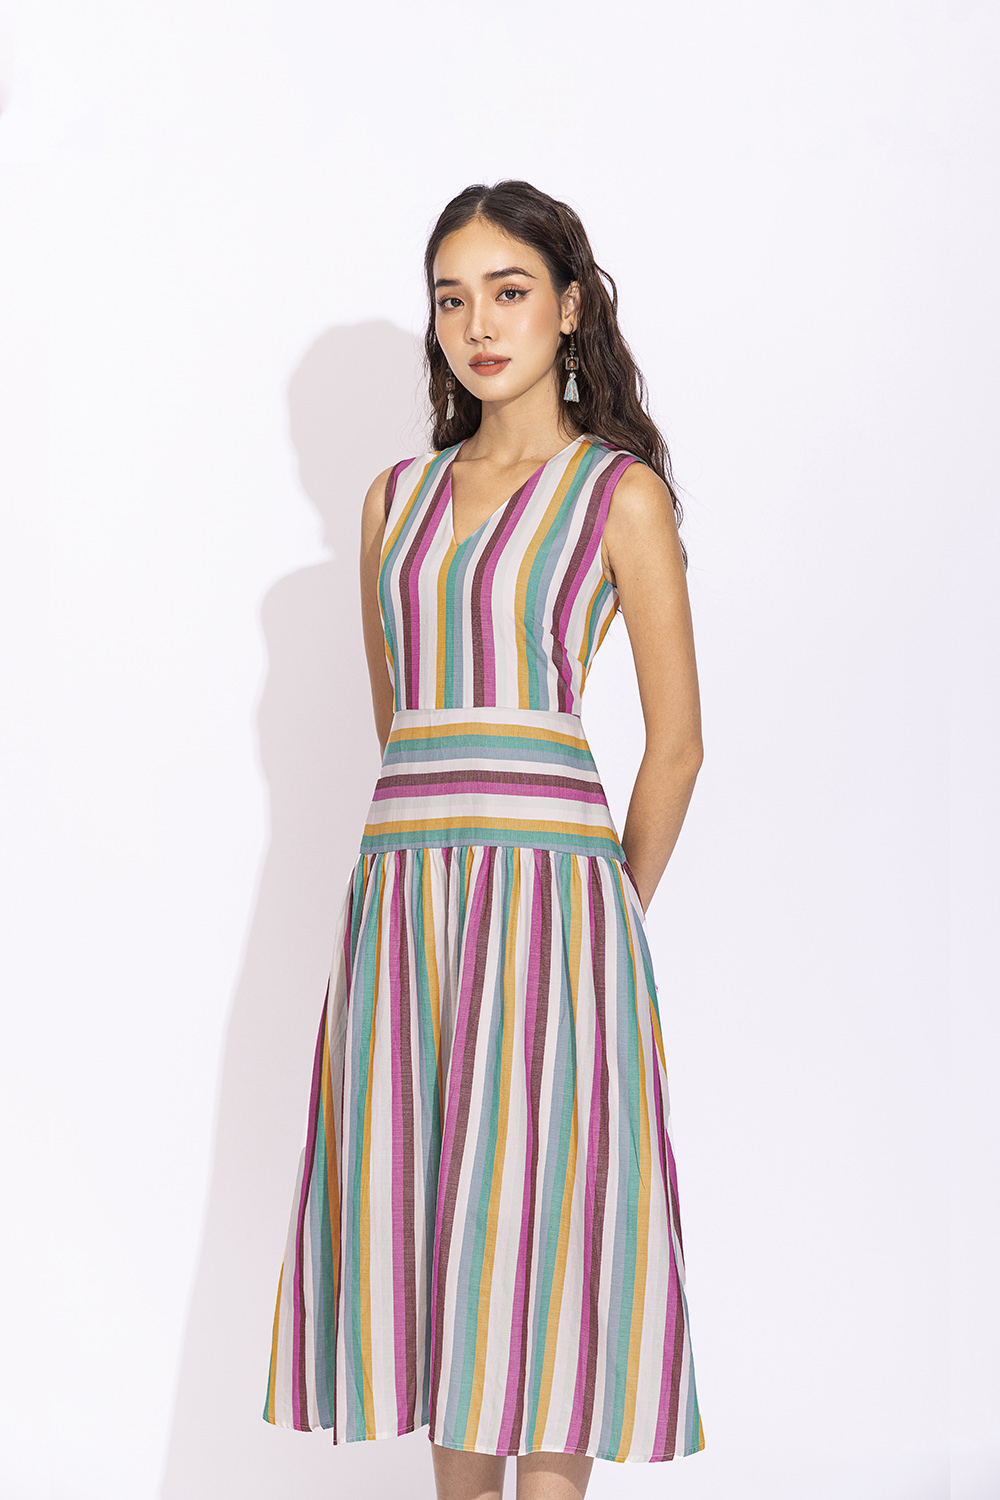 Đầm Xòe Cổ Tim Kẻ Sọc Nhiều Màu Kk150-37 | Thời Trang Công Sở K&K Fashion